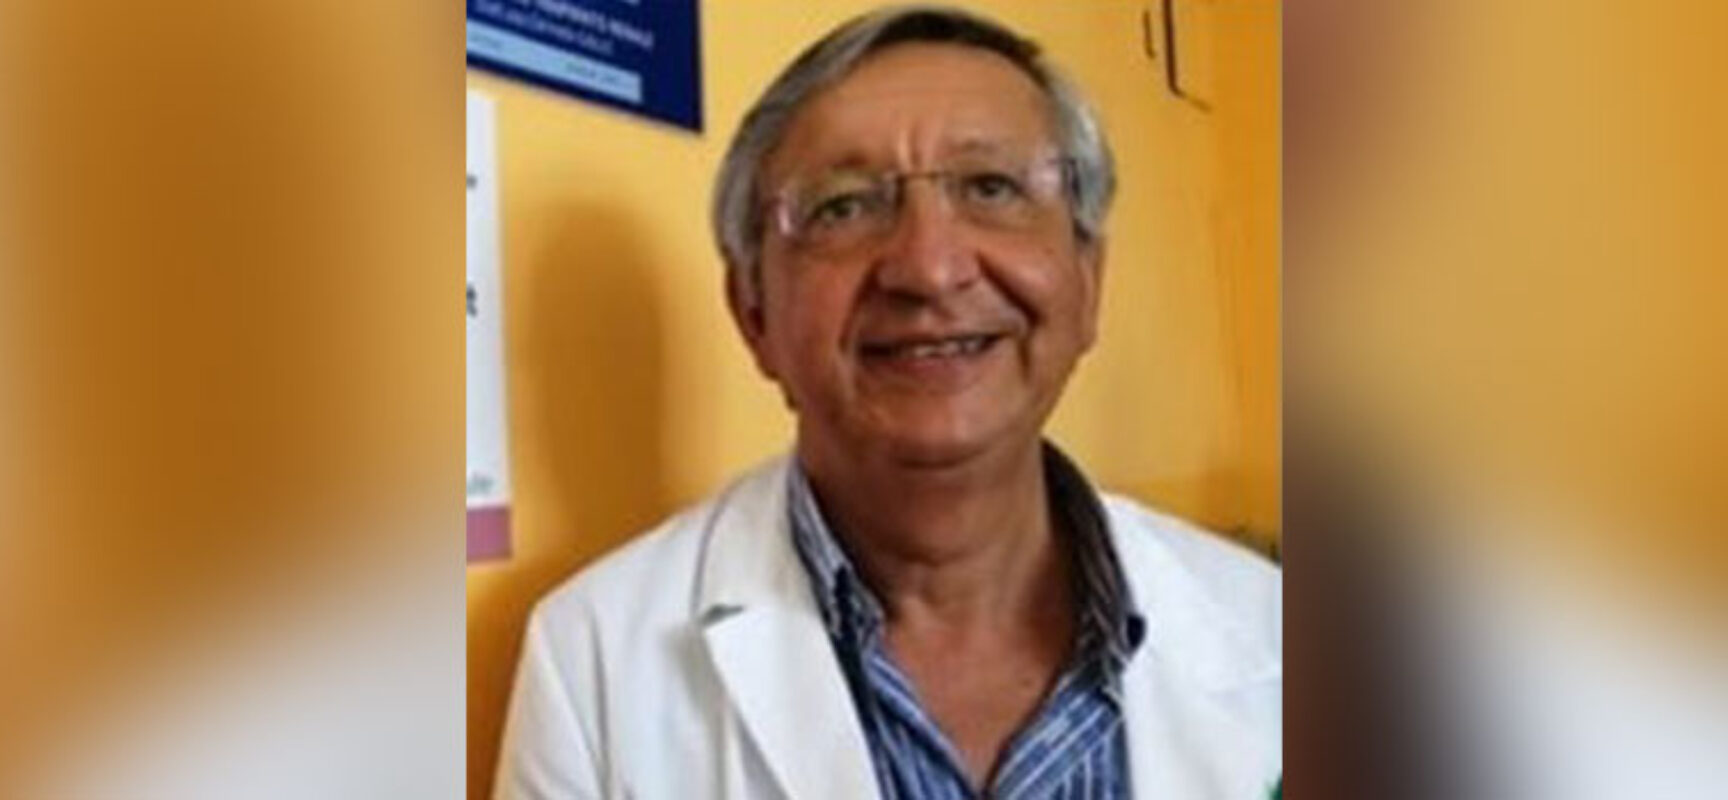 Circolo Unione ospita il Dottor Vitobello sul tema “La Speranza di vita”